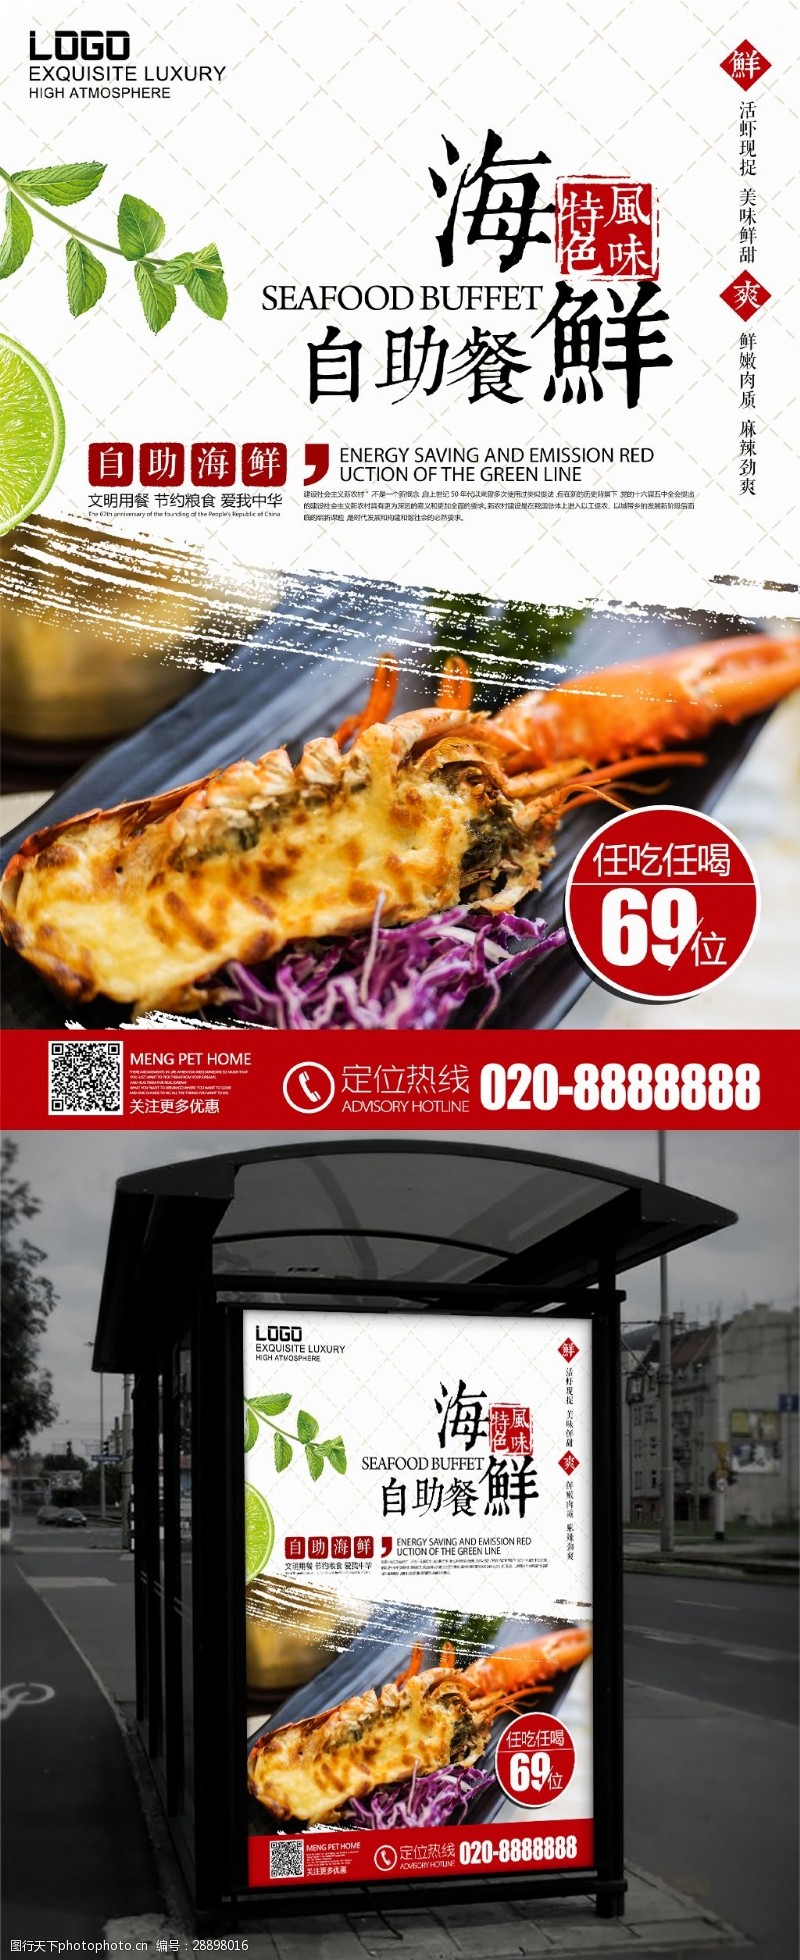 海鲜模板下载秋季美食海鲜自助餐厅促销海报